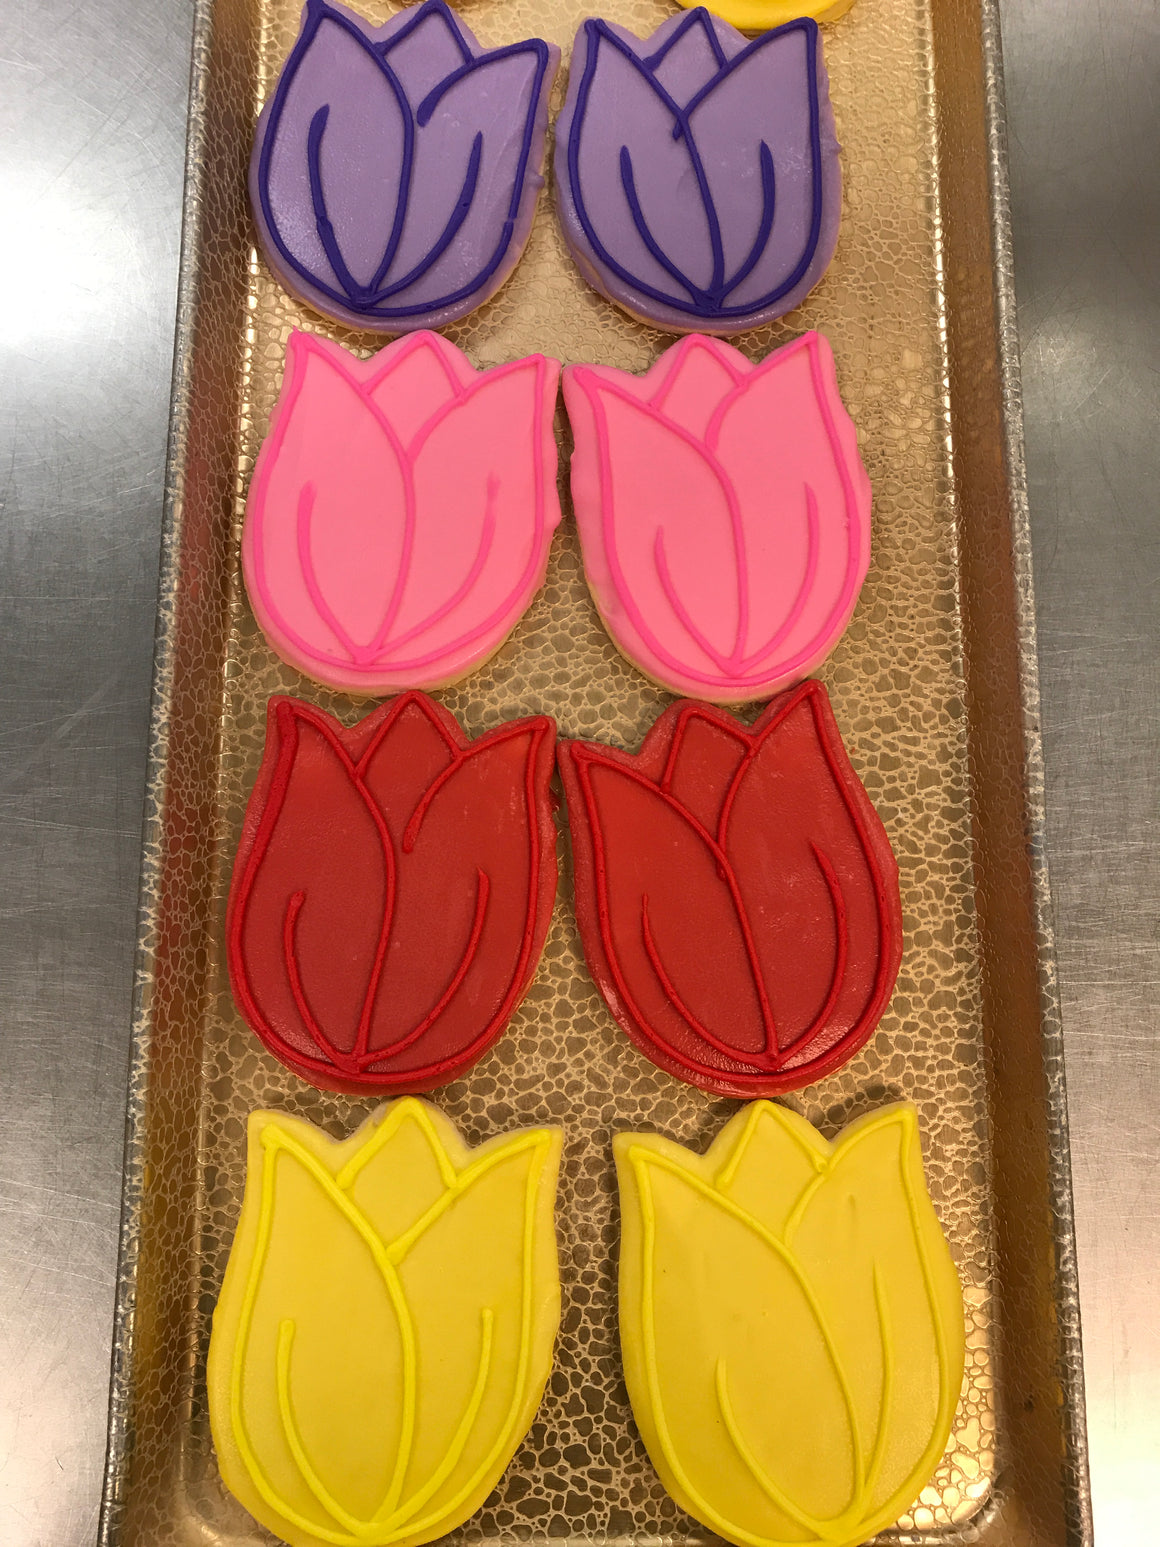 Tulip decorated cookies